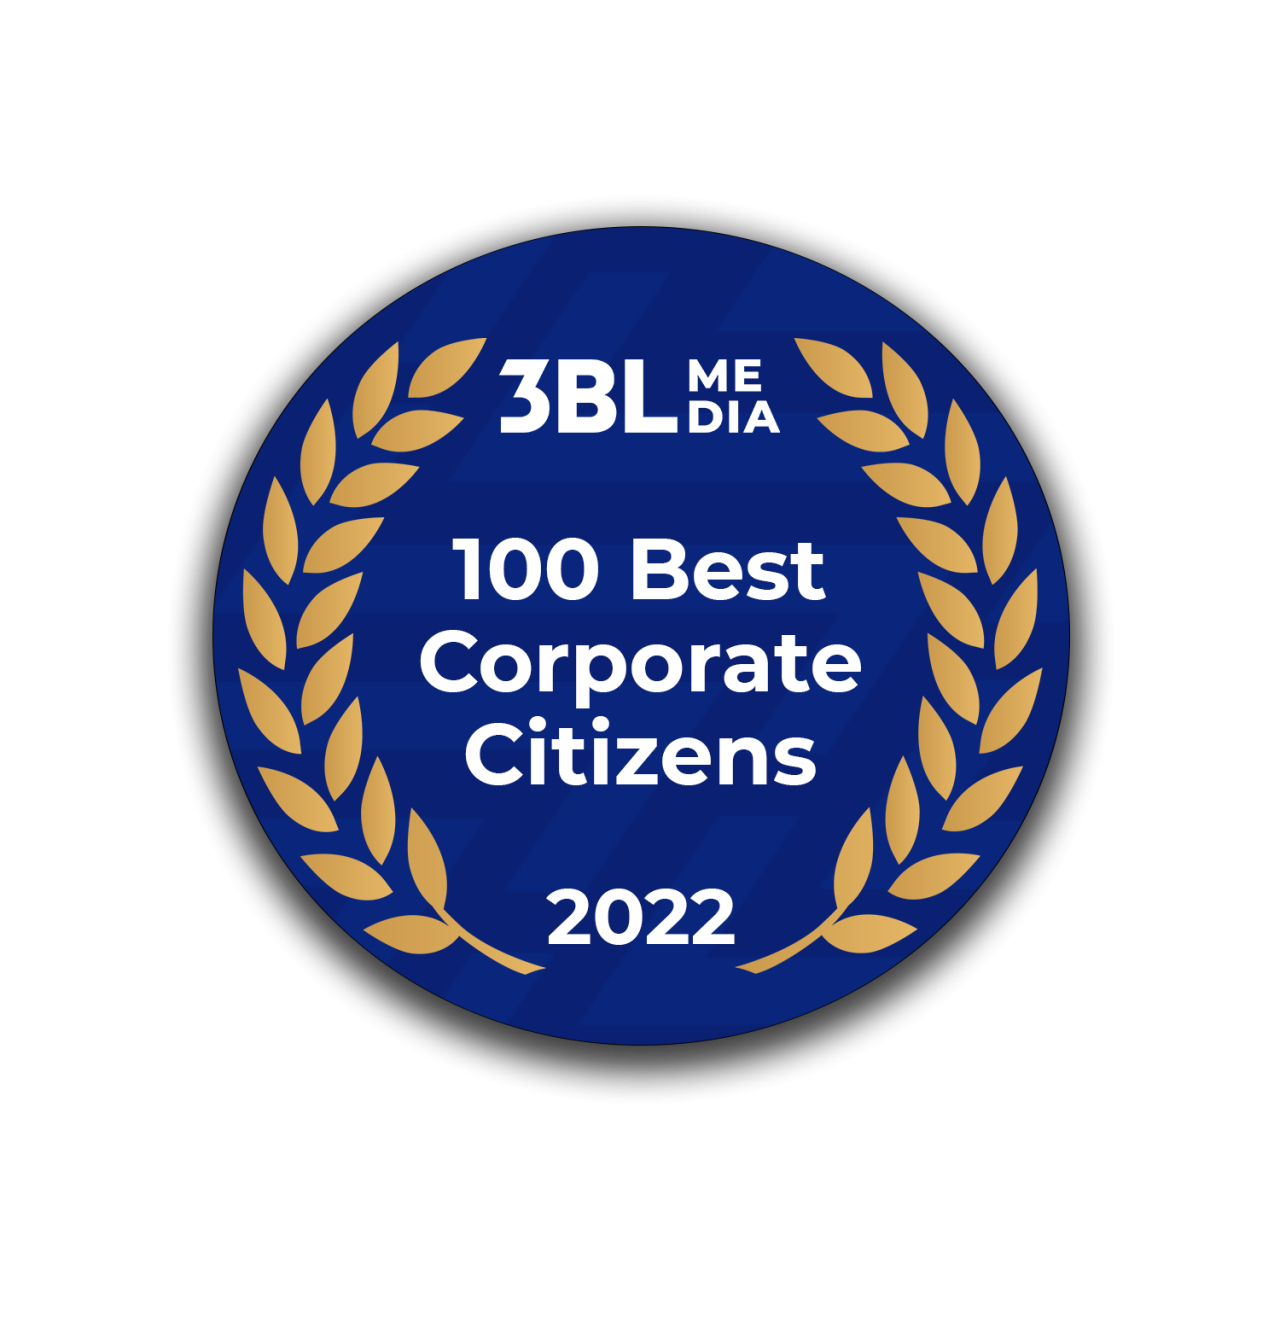 100 Best Corporate Citizens 2022 badge